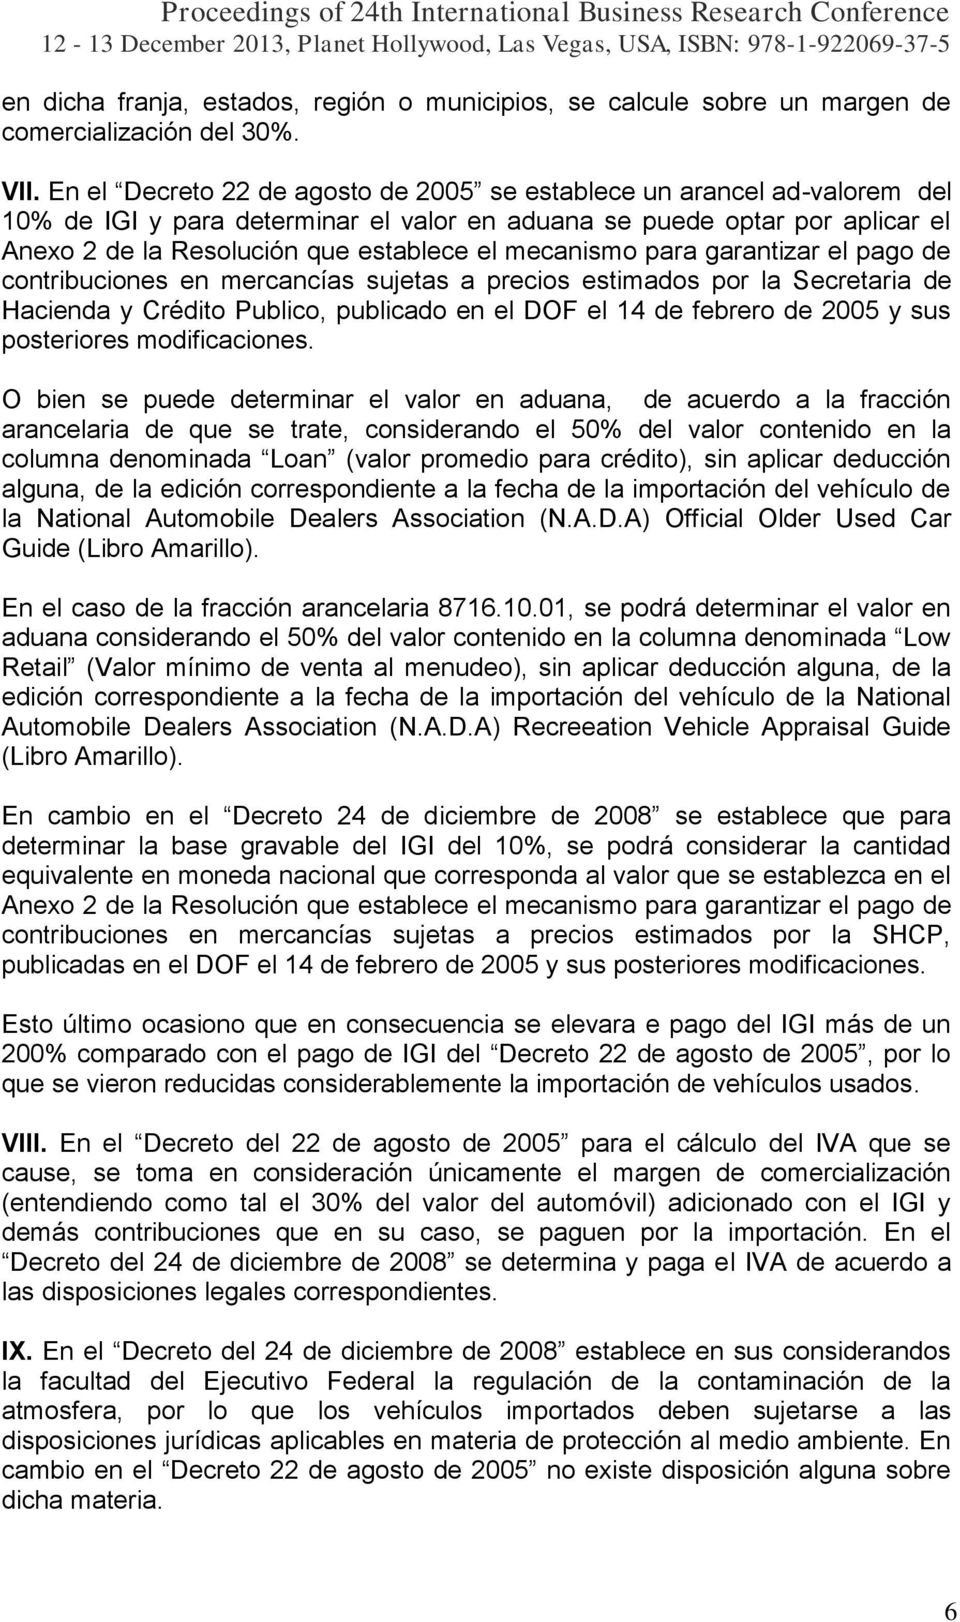 mecanismo para garantizar el pago de contribuciones en mercancías sujetas a precios estimados por la Secretaria de Hacienda y Crédito Publico, publicado en el DOF el 14 de febrero de 2005 y sus